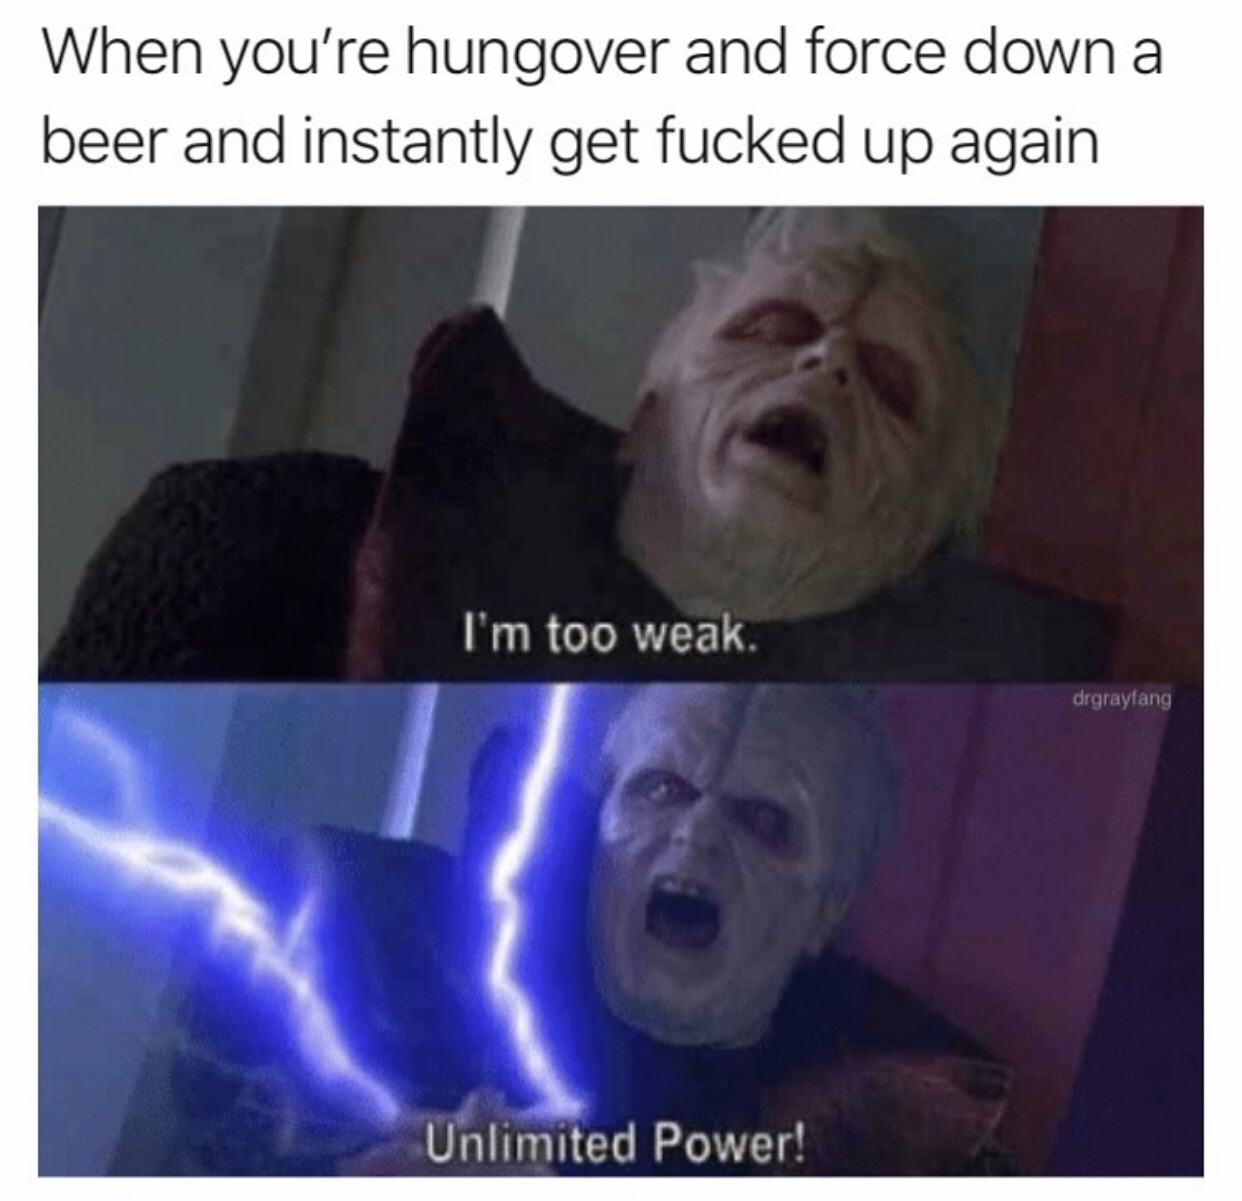 Unlimited Power Meme Blank